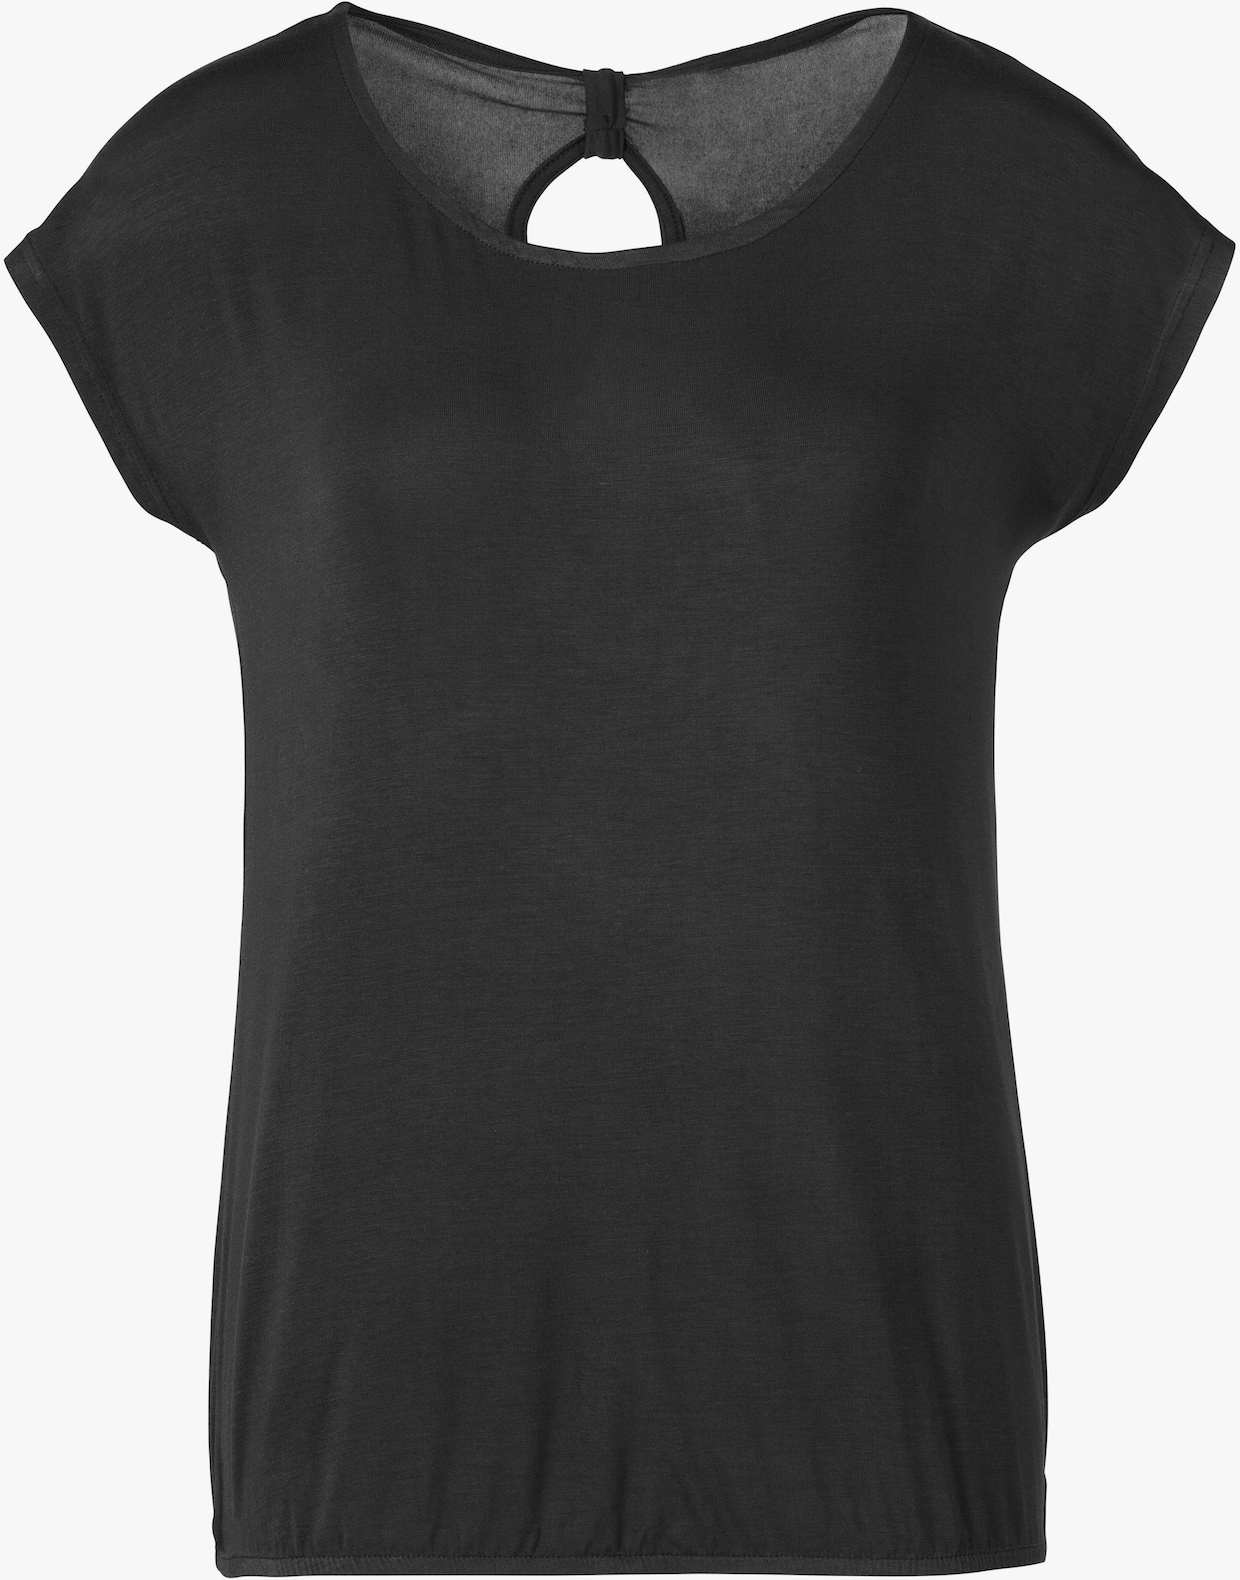 Vivance T-Shirt - flieder, schwarz